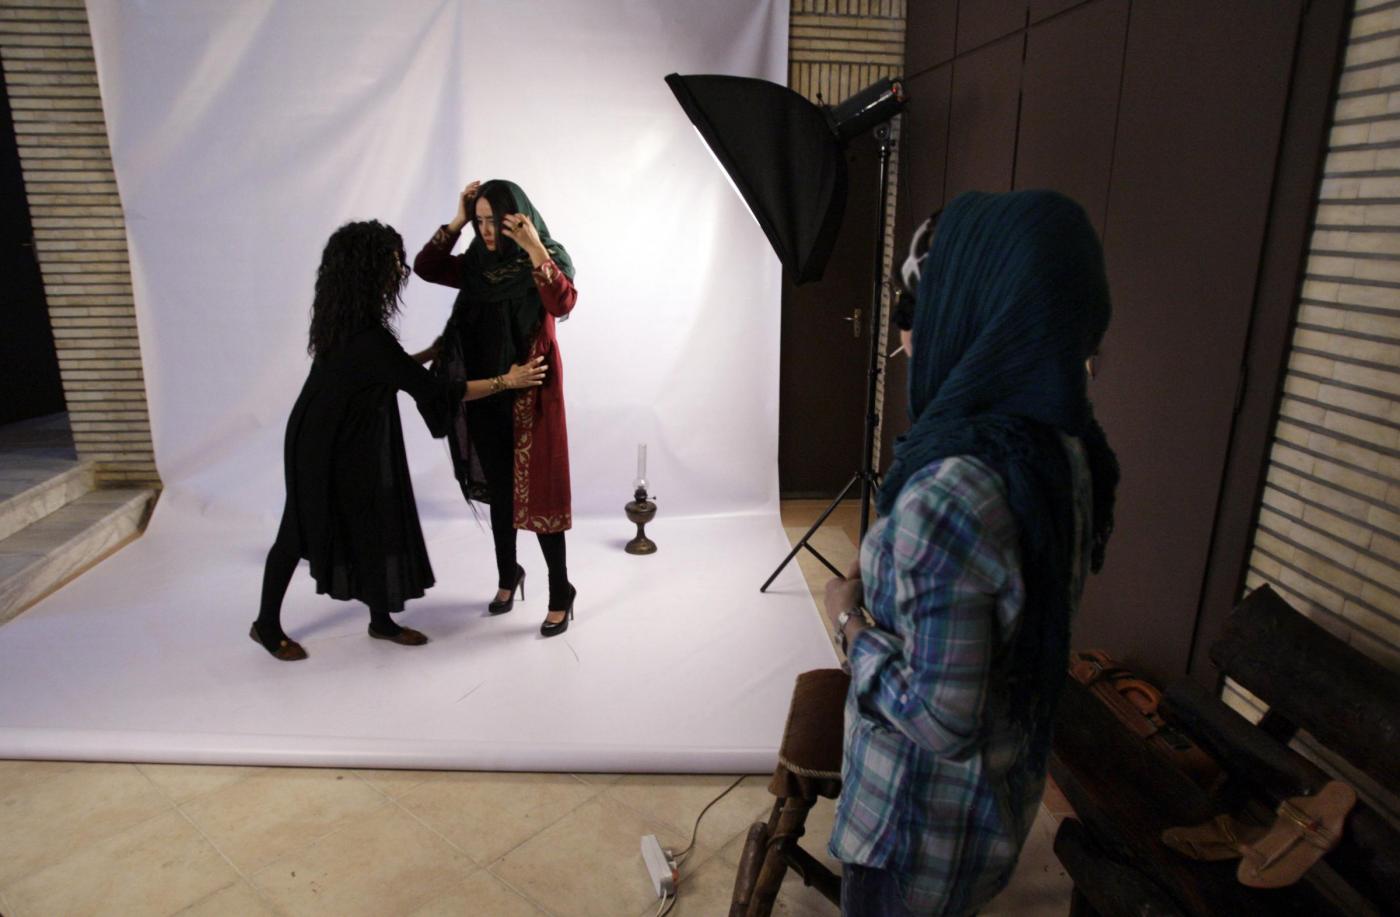 Modelle iraniane durante una sessione fotografica04